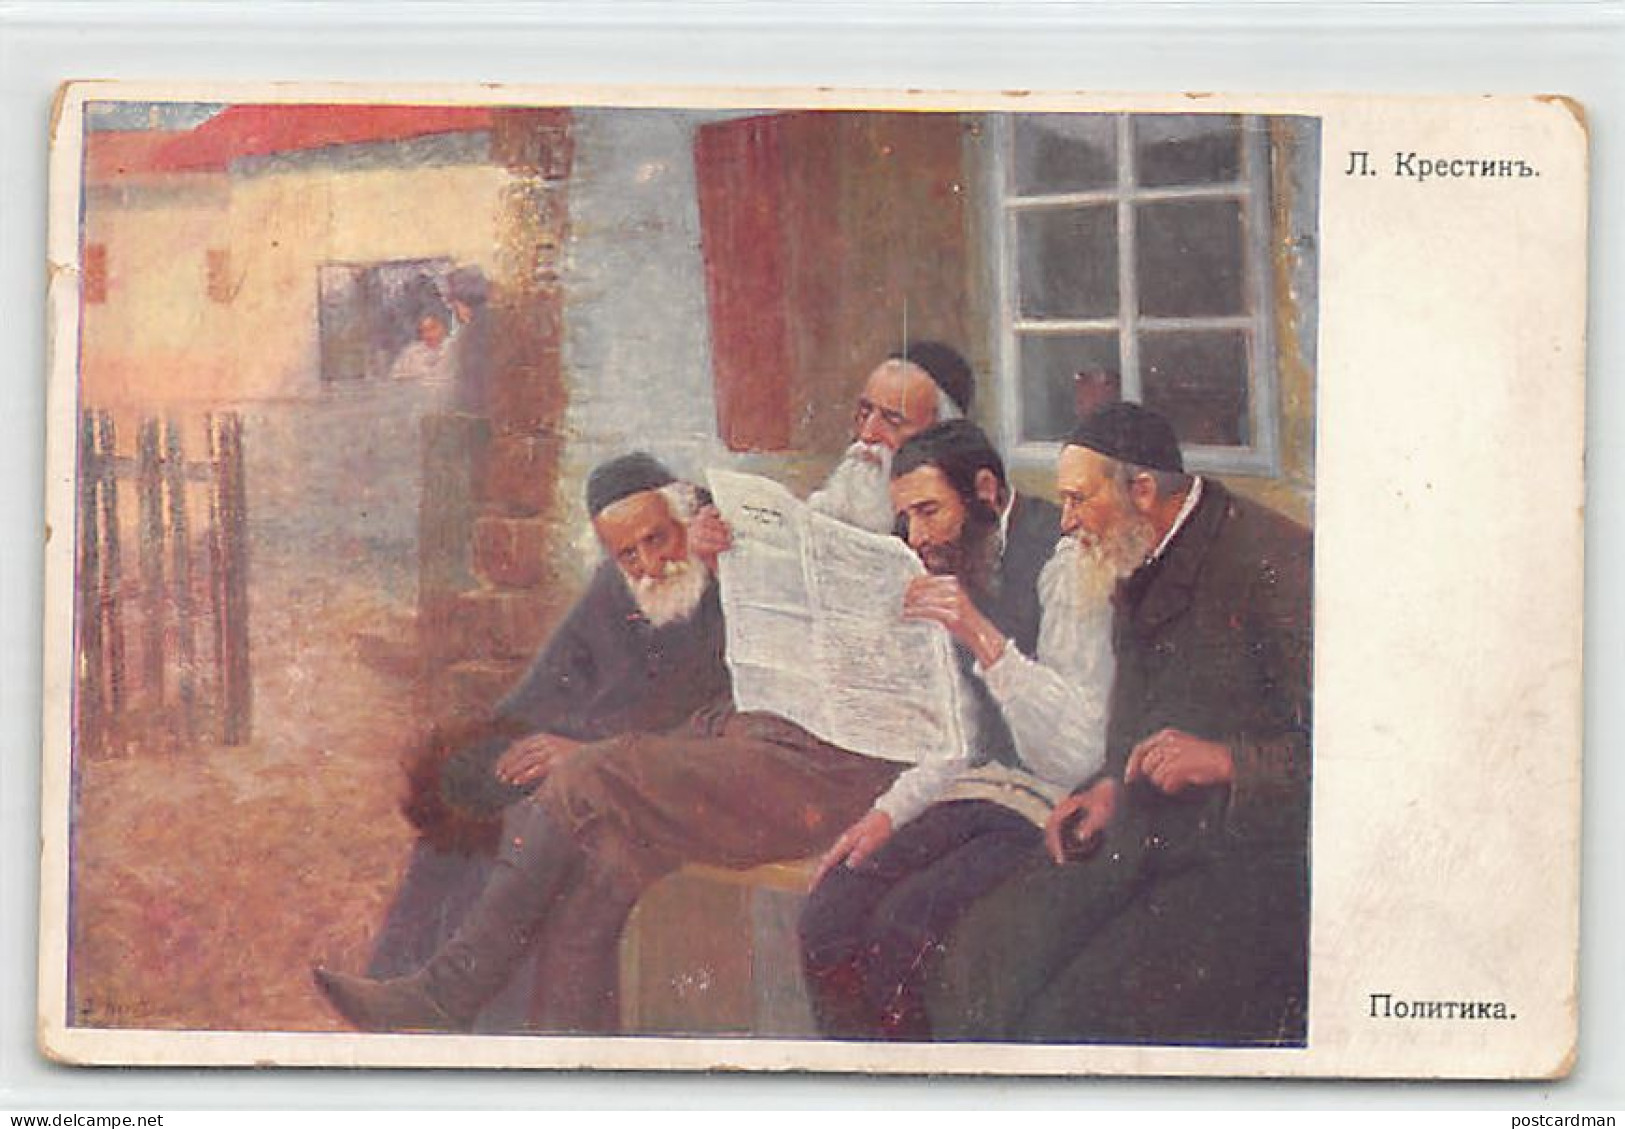 Judaica - RUSSIA - Jews Discussing Politics, Painting By L. Krresting - Publ. B.K.W.I 624-1 - Jewish